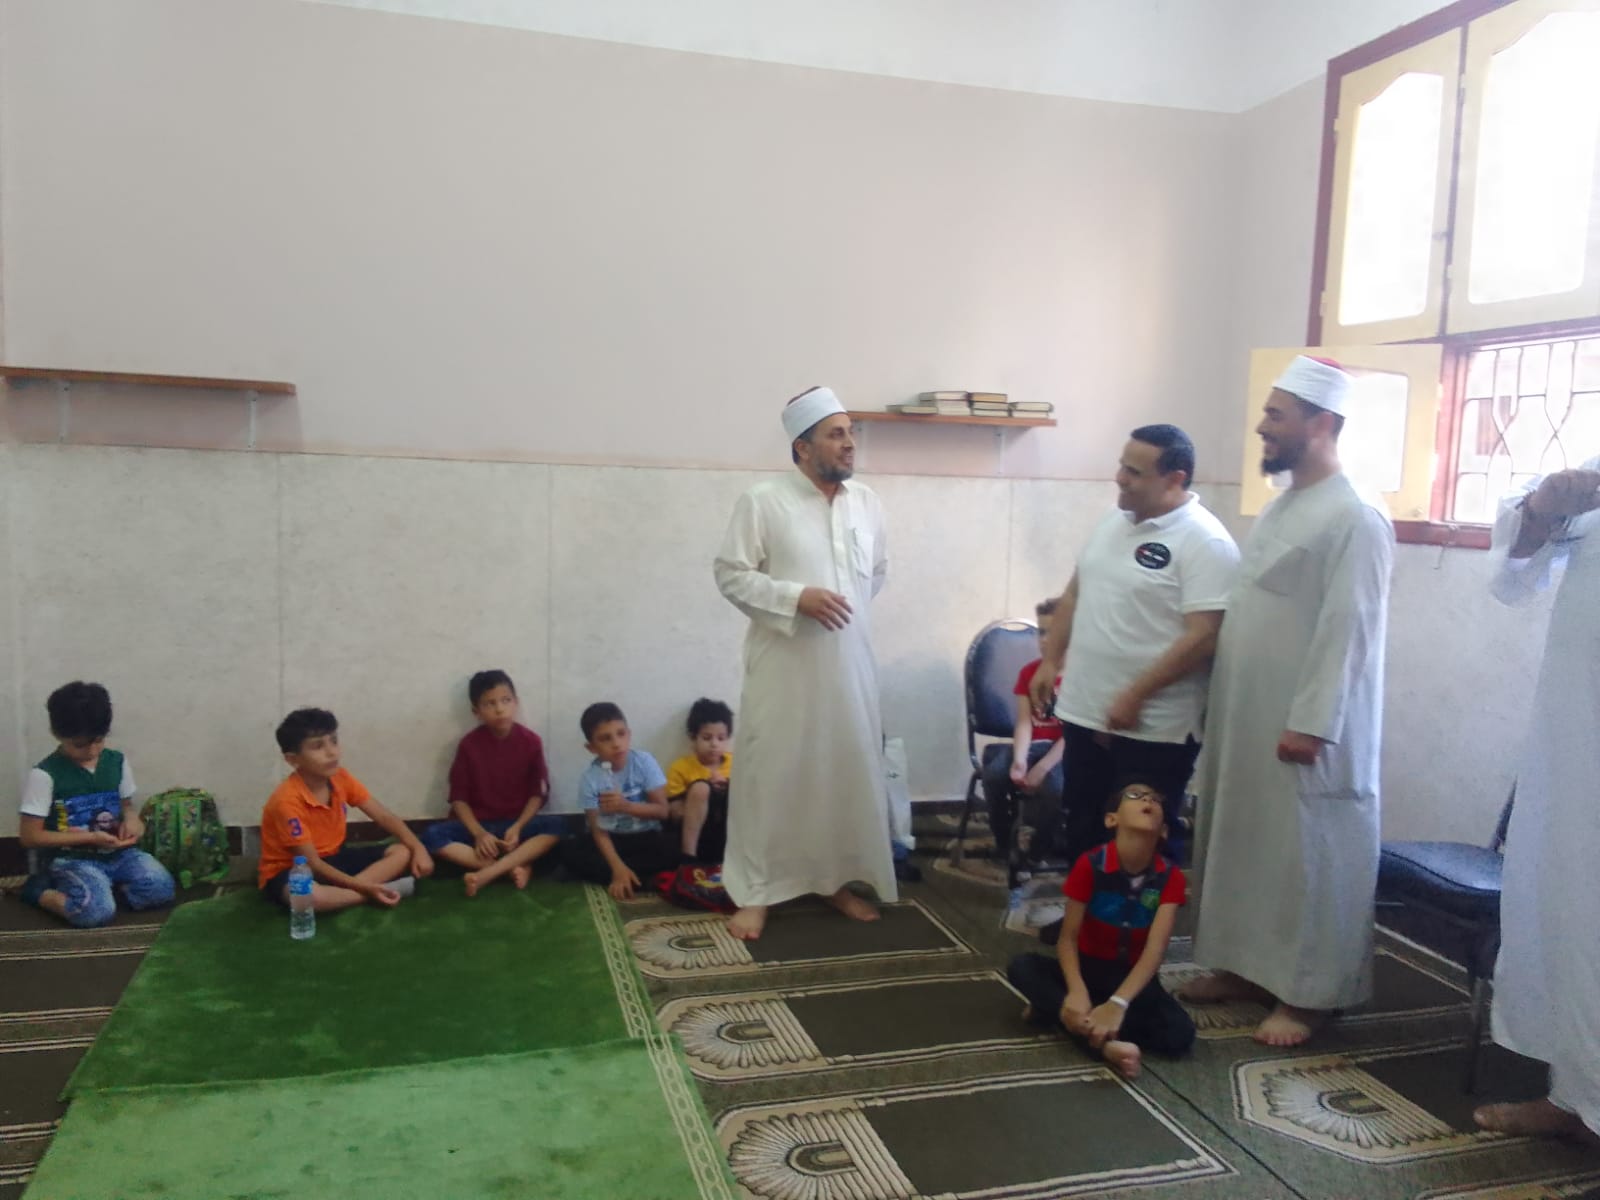 أزهر دمياط يطلق مبادرة الرواق الأزهري لتحفيظ القرآن الكريم للأطفال (2)